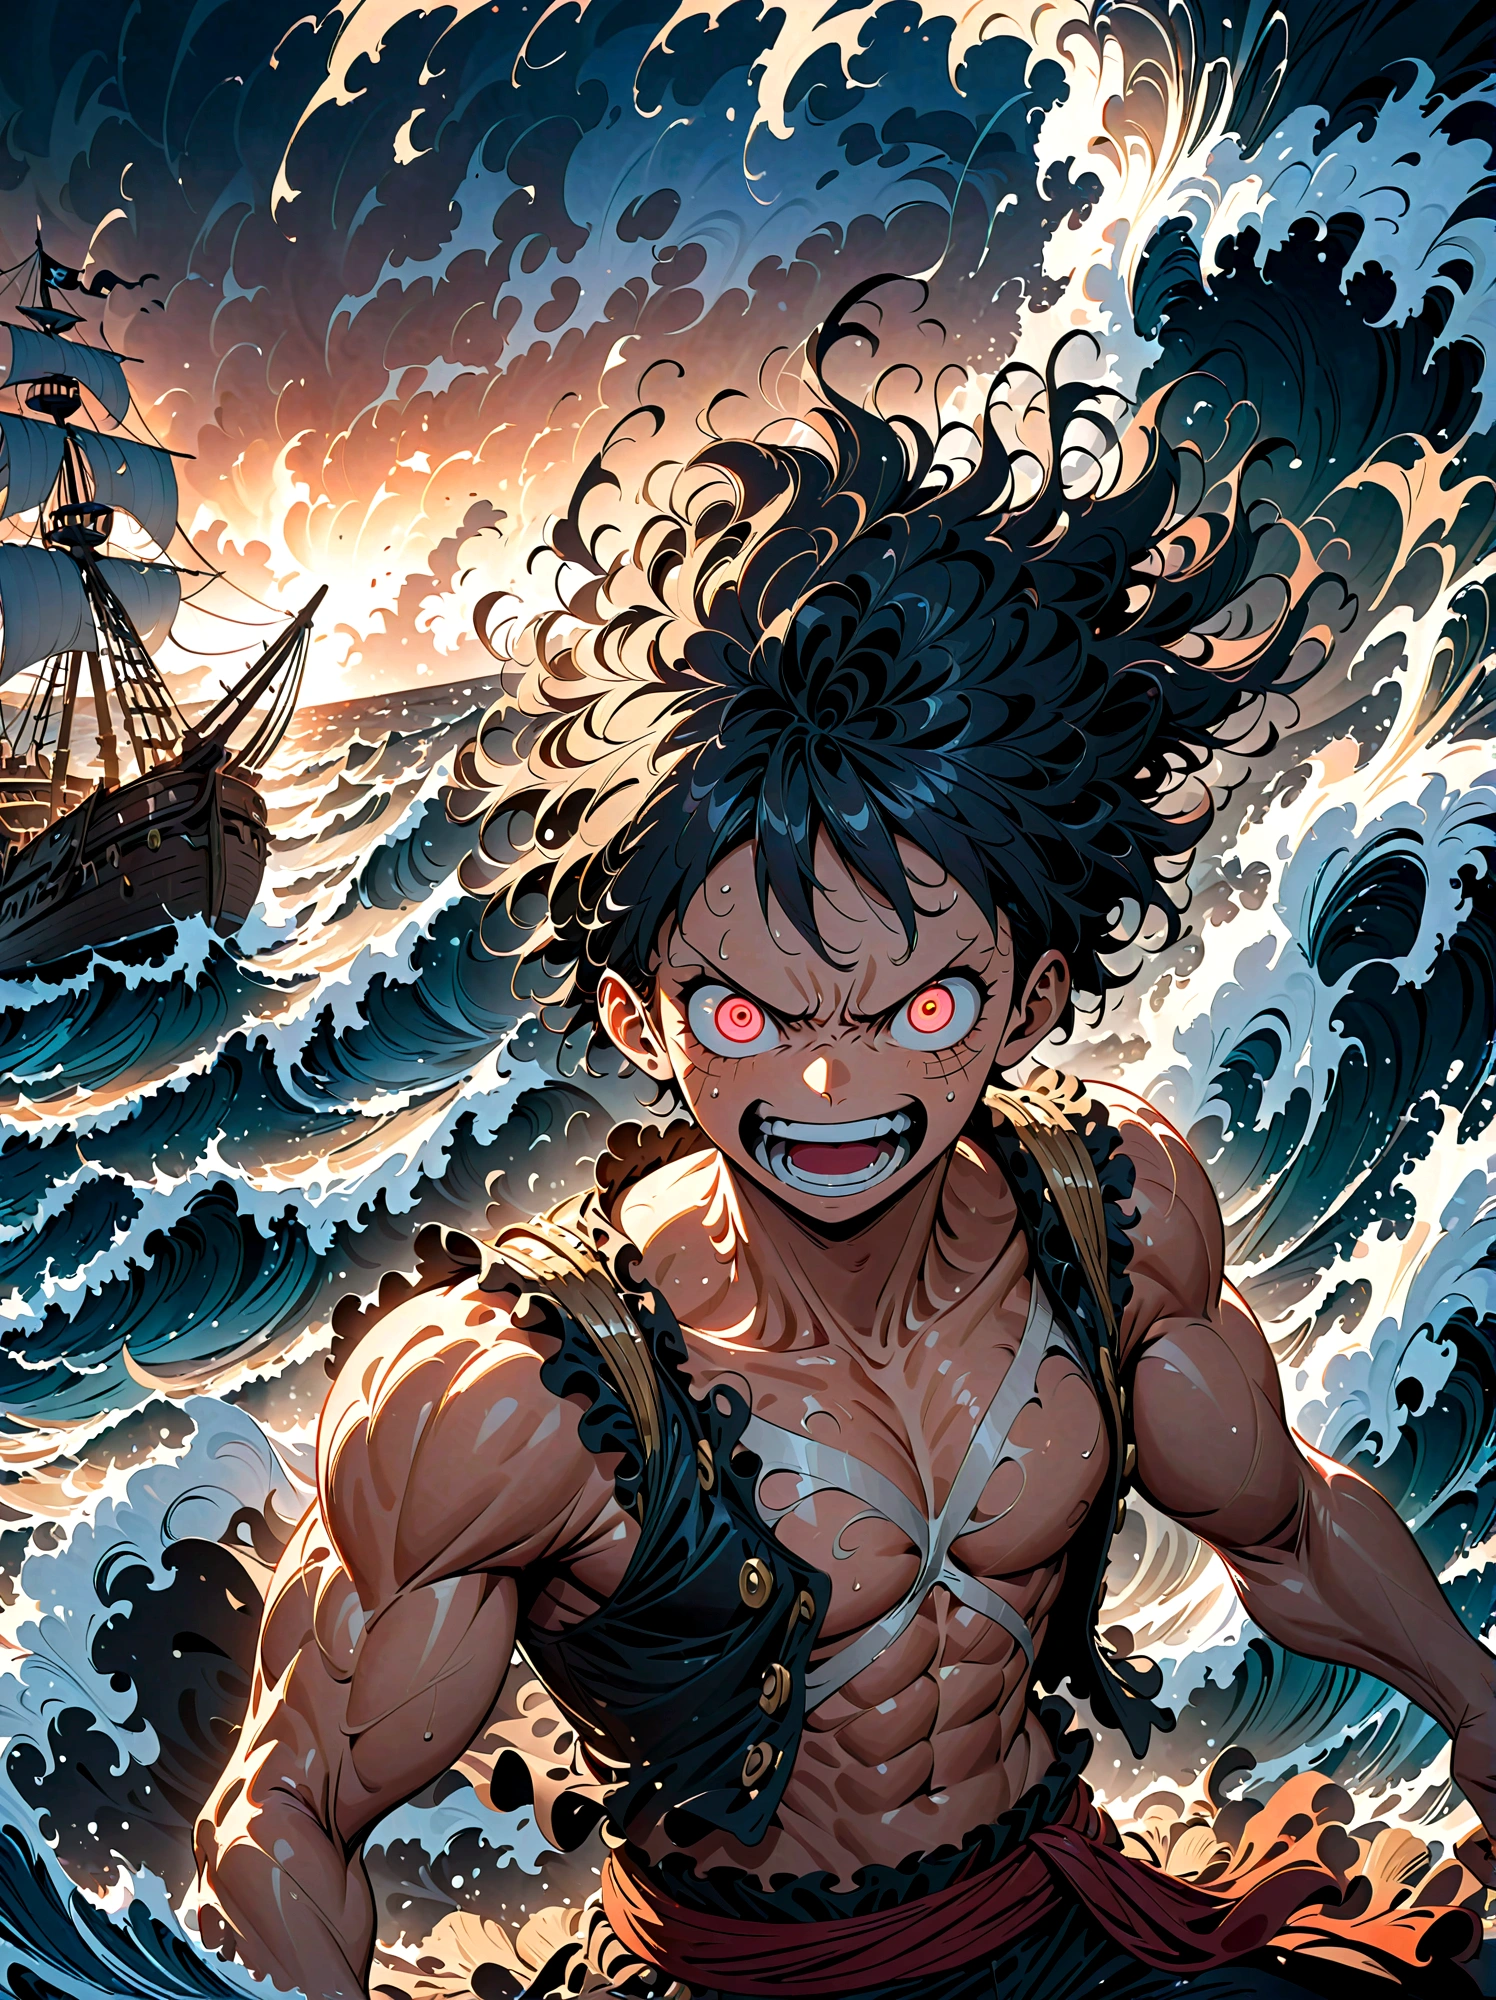 un personnage One Piece puissant et énergique, Luffy, avec une expression intense, une détermination brûlante et un esprit inflexible, standing Héroïqueally on a pirate ship, entouré d&#39;énormes vagues océaniques, (Meilleure qualité, 8k, haute résolution, chef-d&#39;œuvre:1.2), Éclairage dynamique, composition cinématographique, palette de couleurs dramatique, pose frappante, coiffure sauvage, traits du visage détaillés, yeux brillants, expression déterminée, Corps musclé, tenue de pirate, bateau à voile, vagues de l&#39;océan qui s&#39;écrasent, ciel orageux, (épique,Héroïque:1.2)